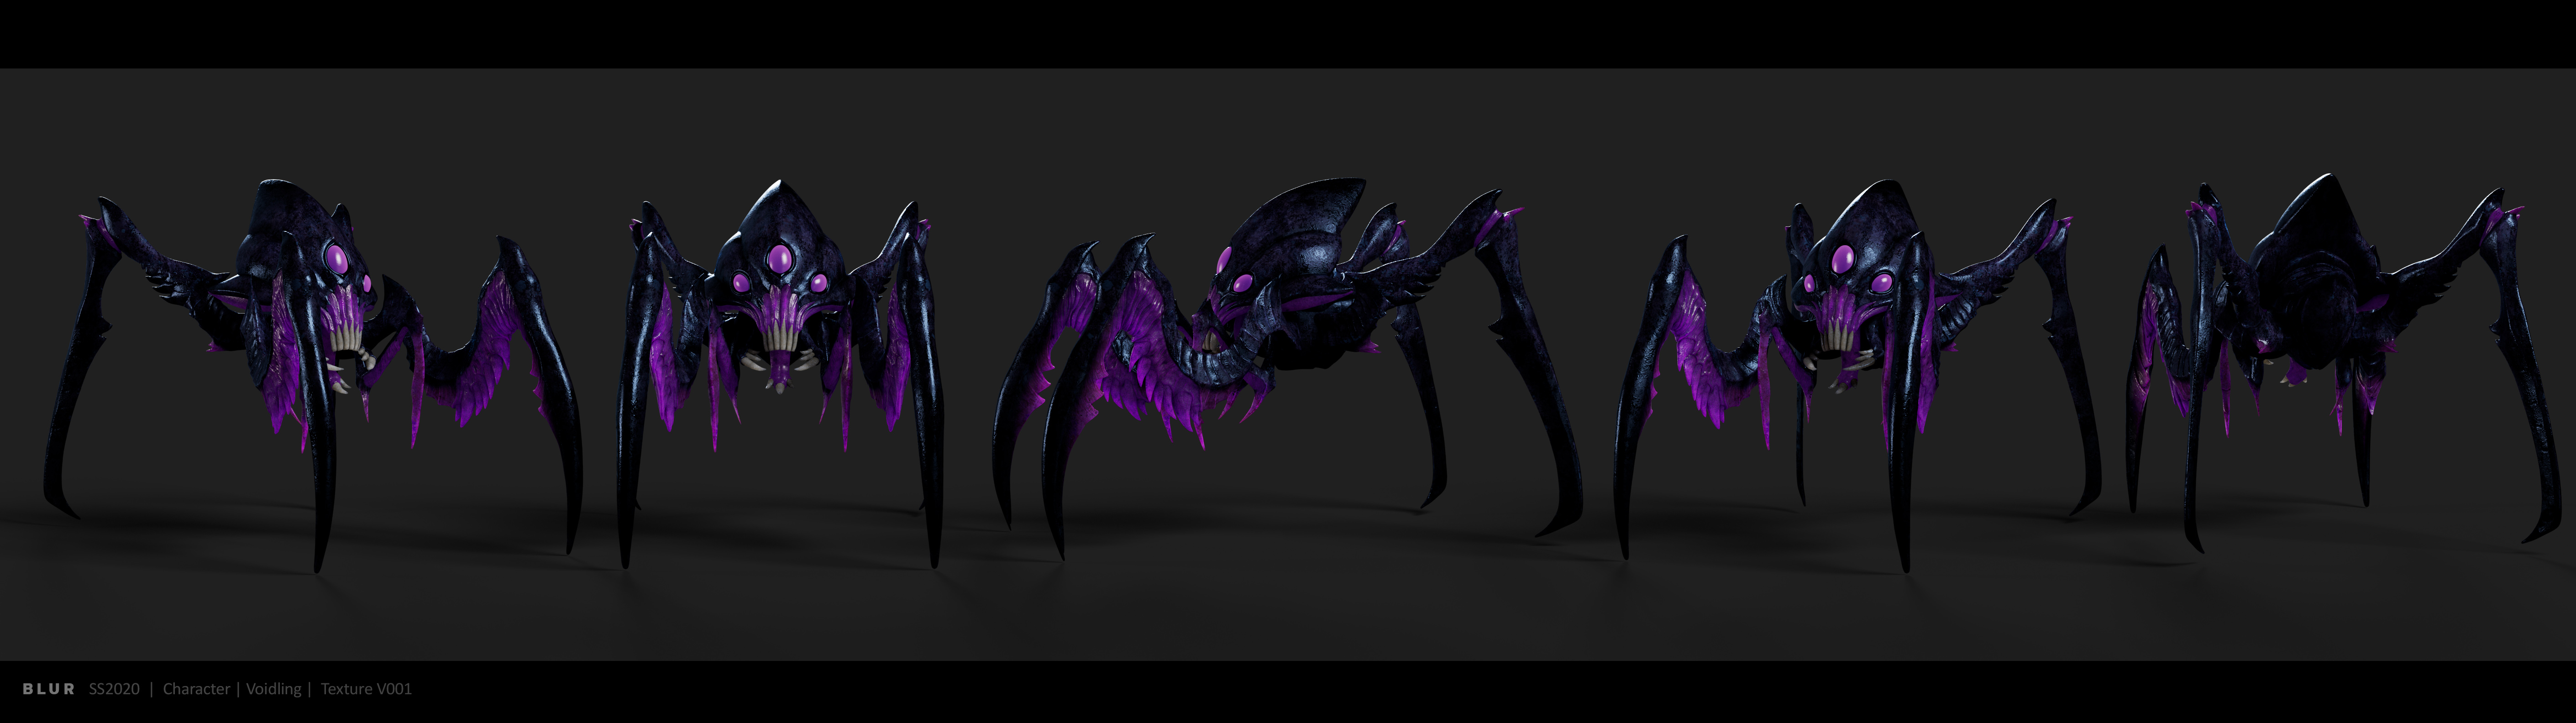 恐怖的紫色蜘蛛怪物Voidling3d次世代游戏模型下载插图4